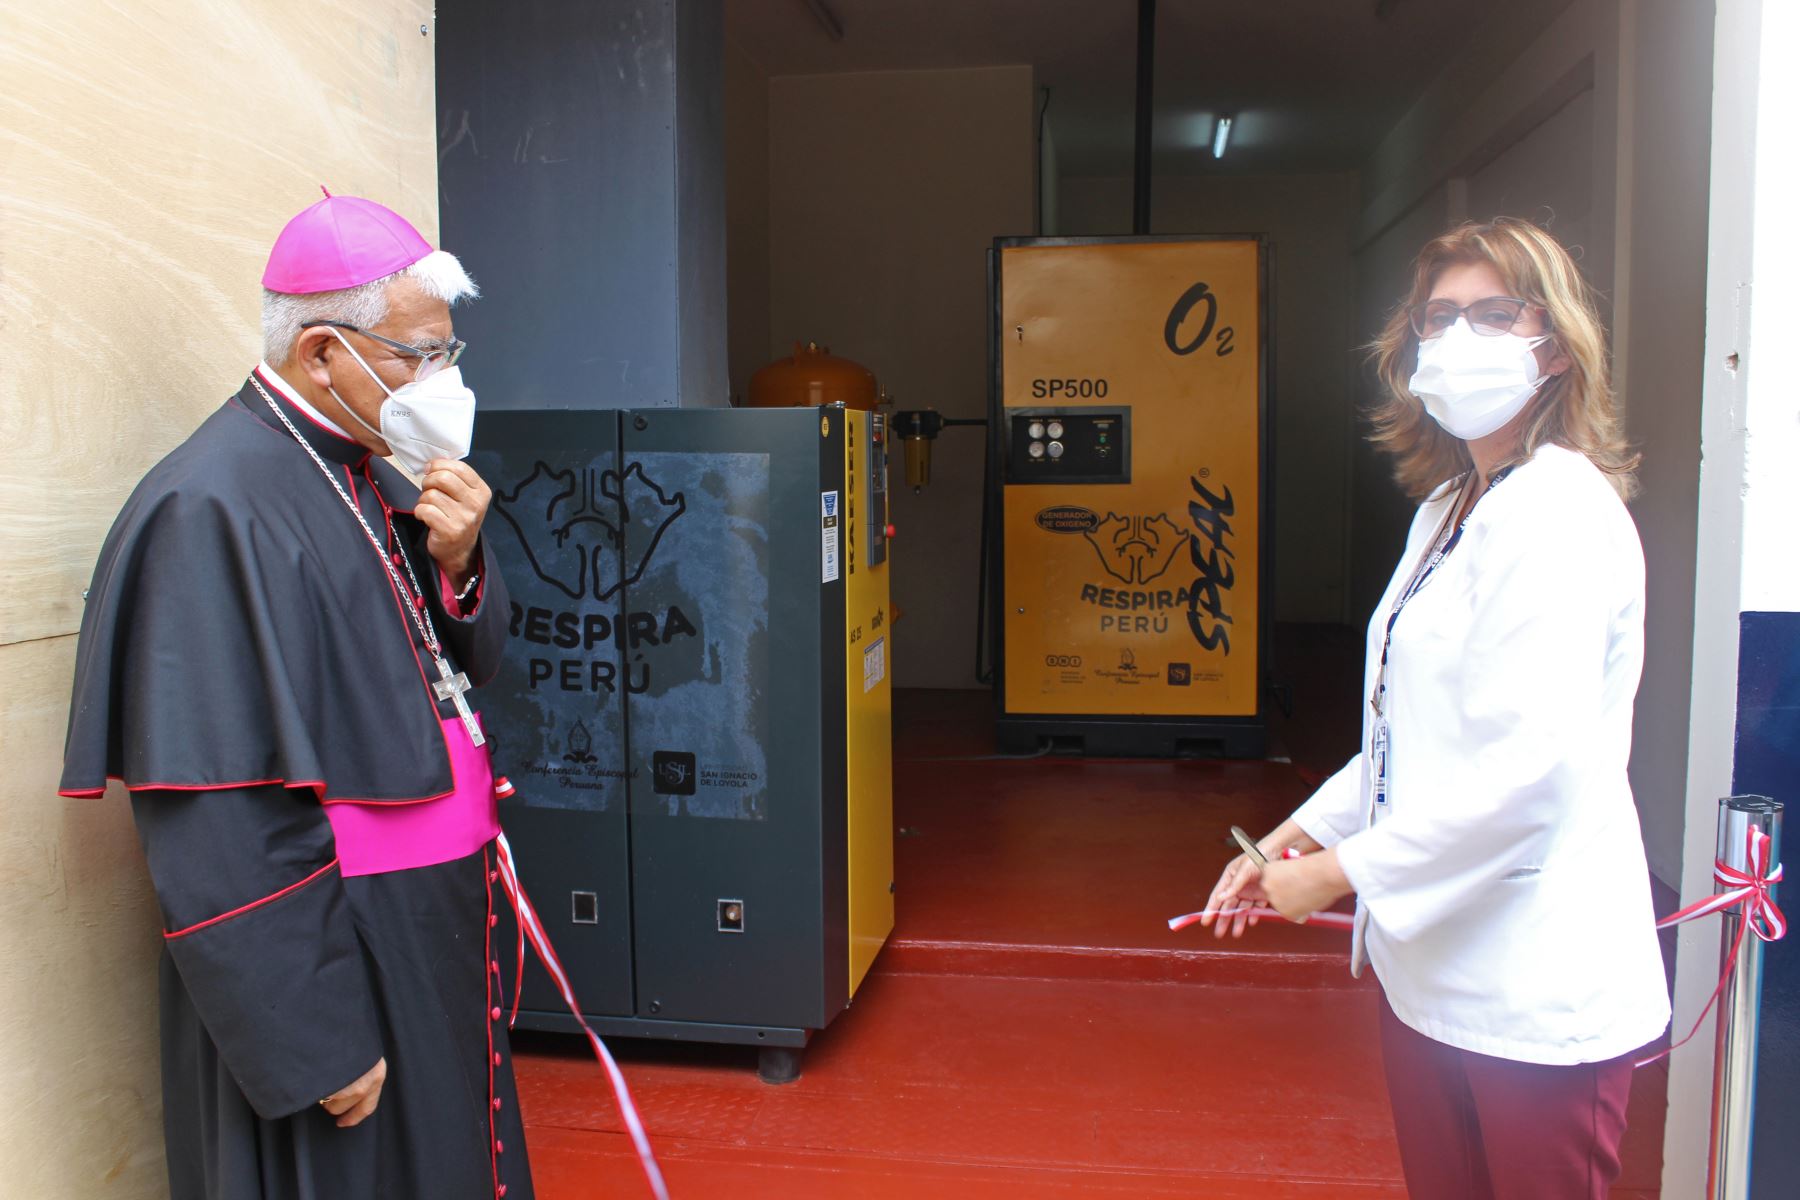 La planta de oxígeno entregada por Respira Perú alcanza una pureza de producción del 95 % del insumo medicinal. Foto: ANDINA/difusión.